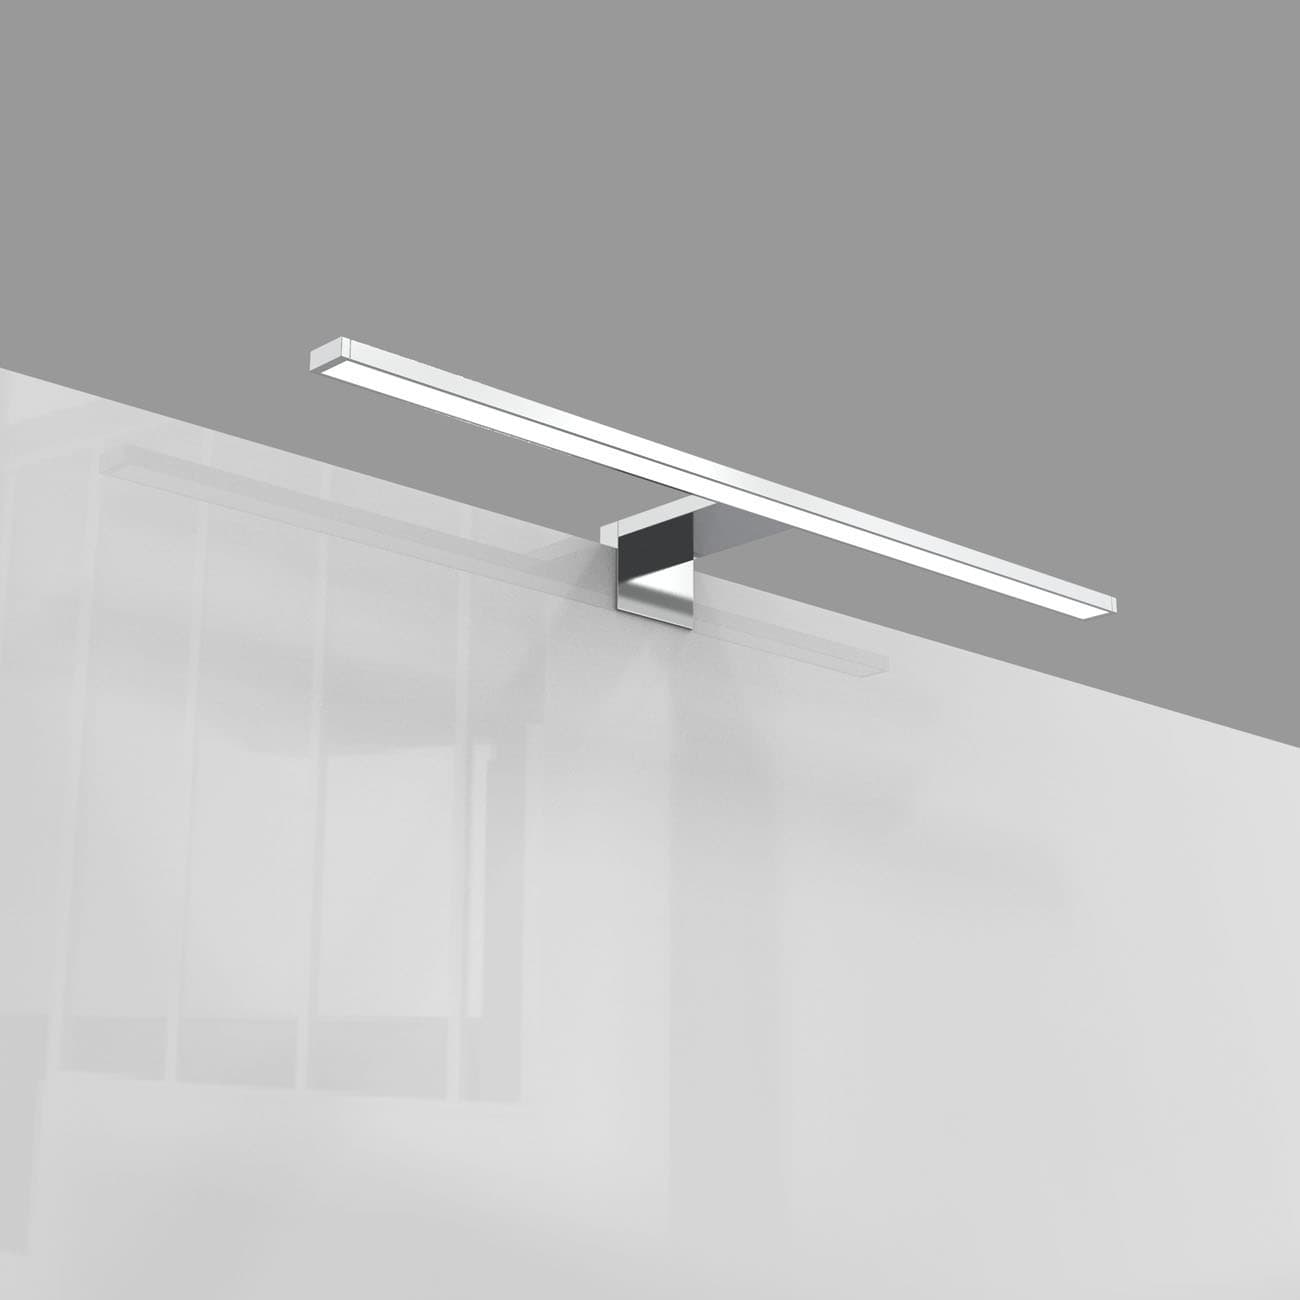 LED Spiegellampe - 60x10cm - Badezimmerleuchte IP44 230V Leuchtmittel 8W 780lm neutralweiß | Chrom-farbig - 8